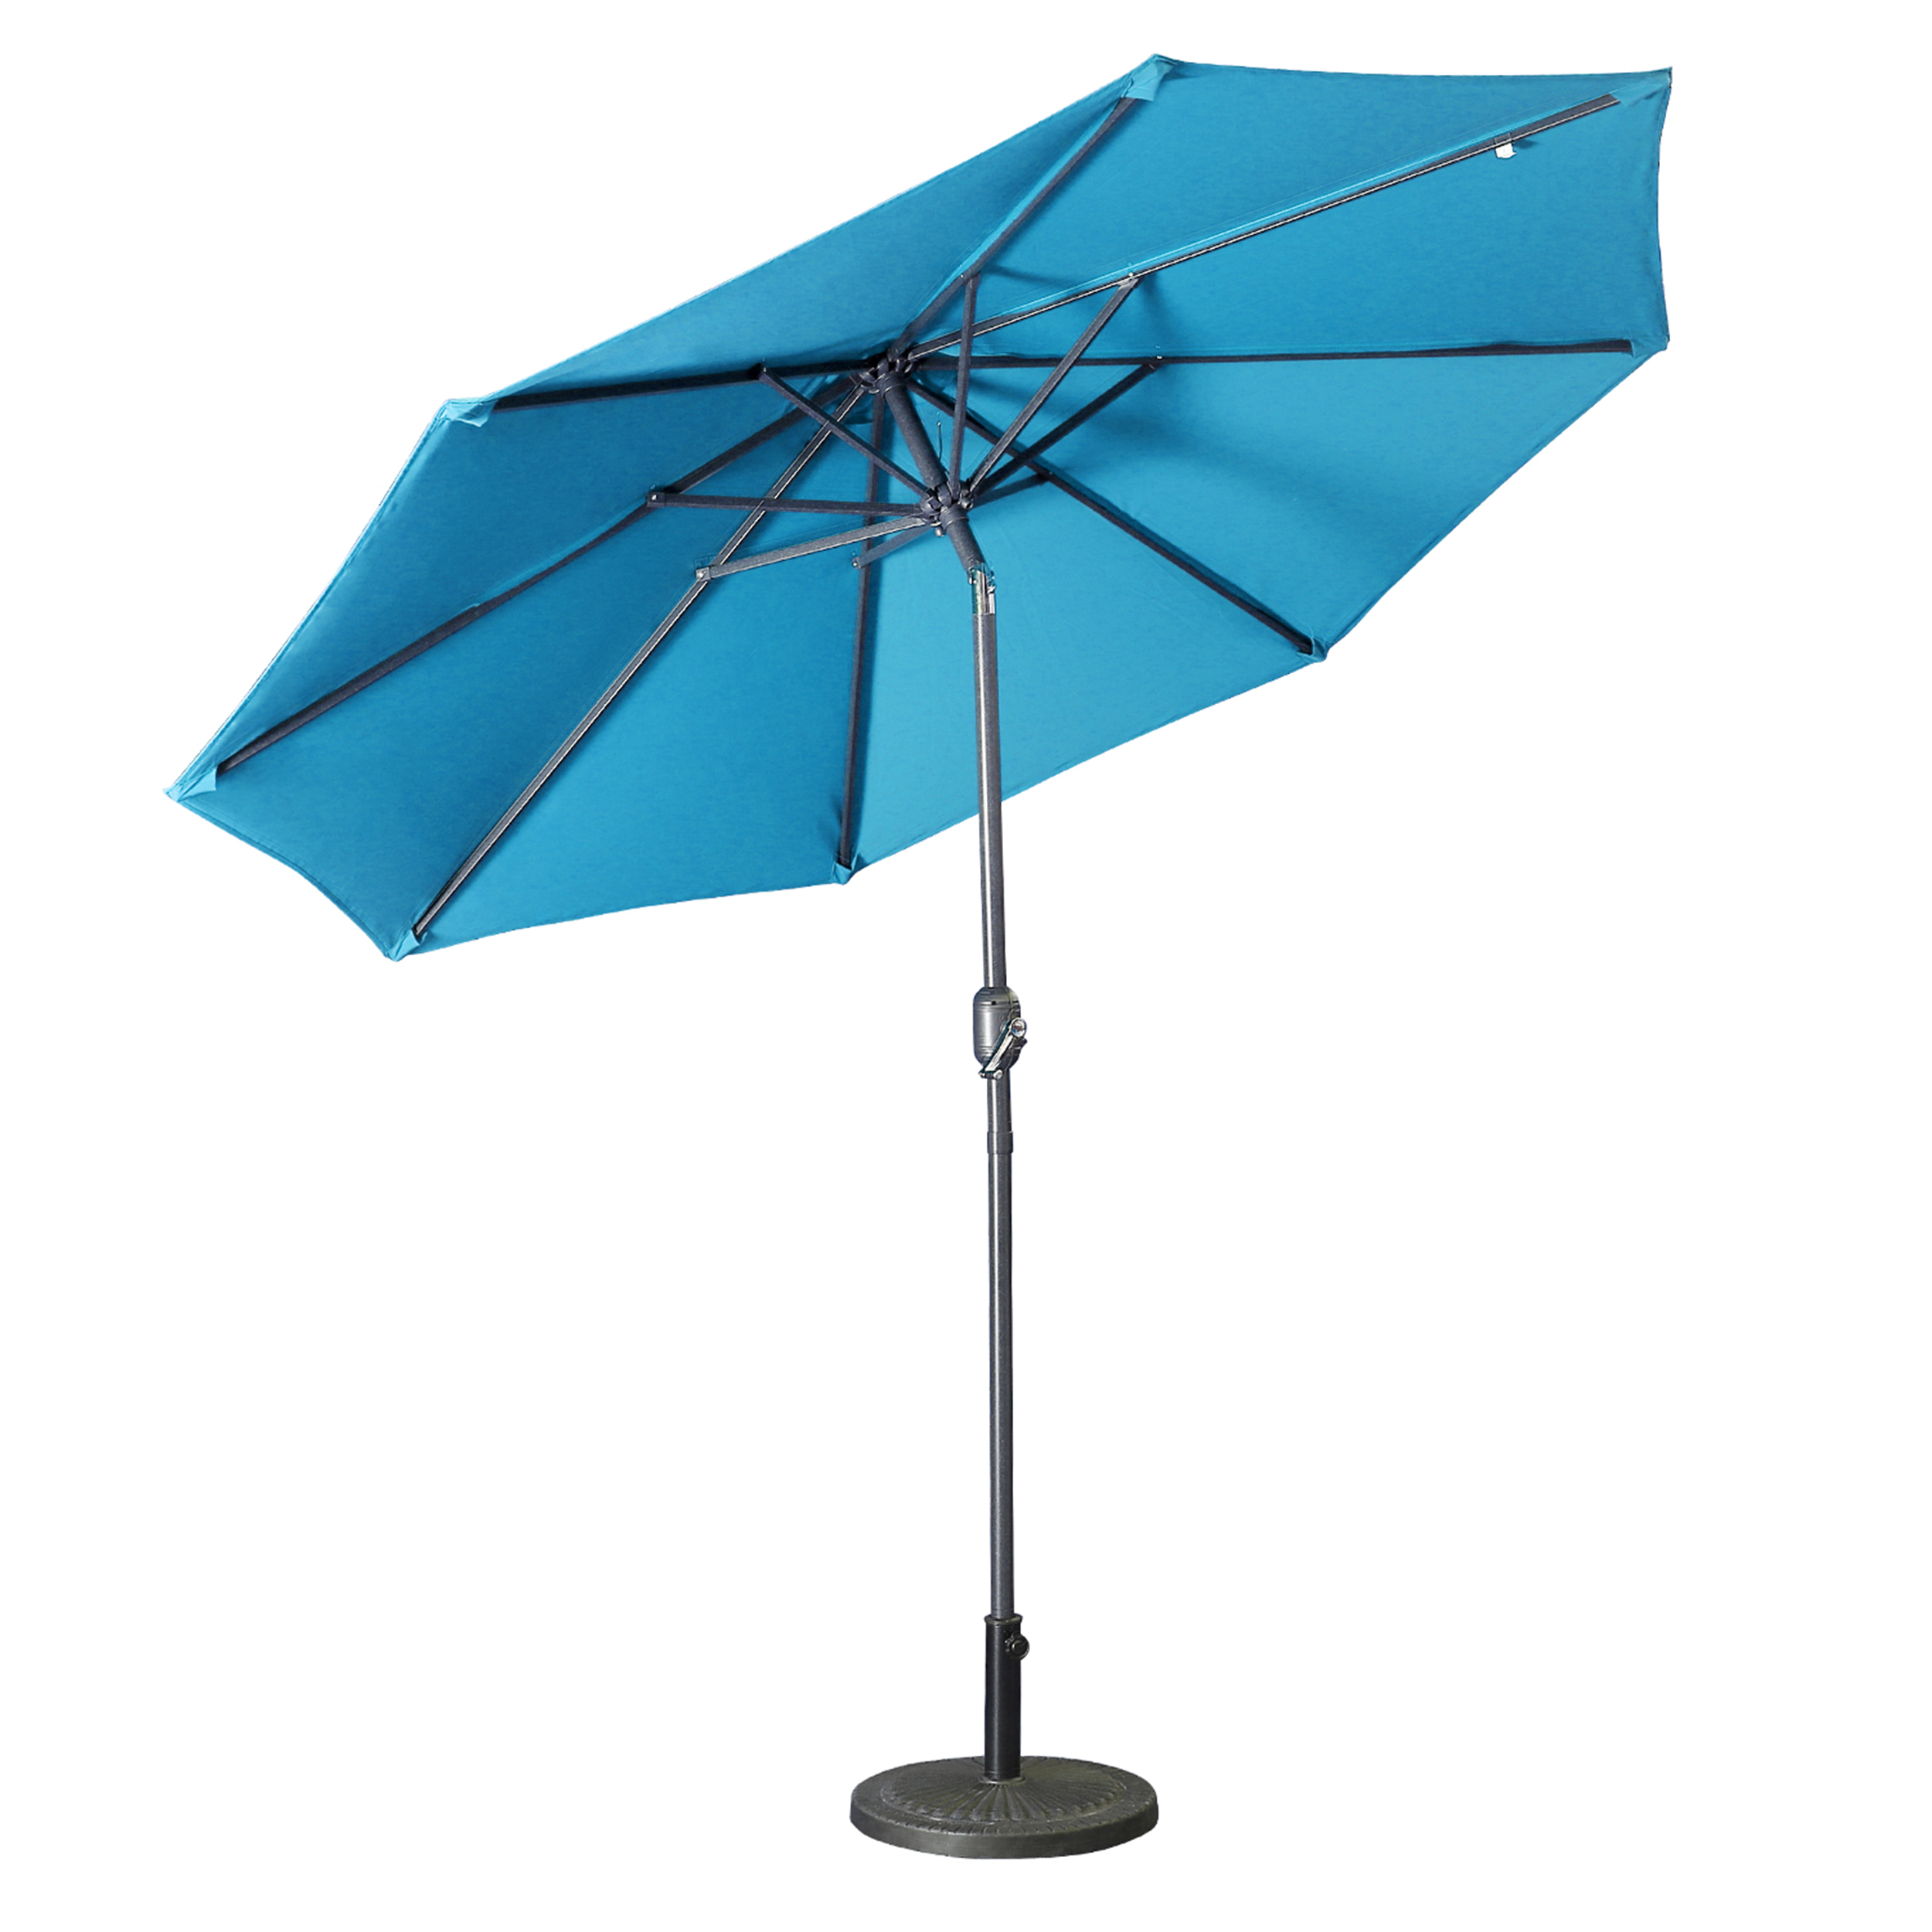 Casainc 9 ft. Alum Patio Umbrella in Lake Blue-CASAINC